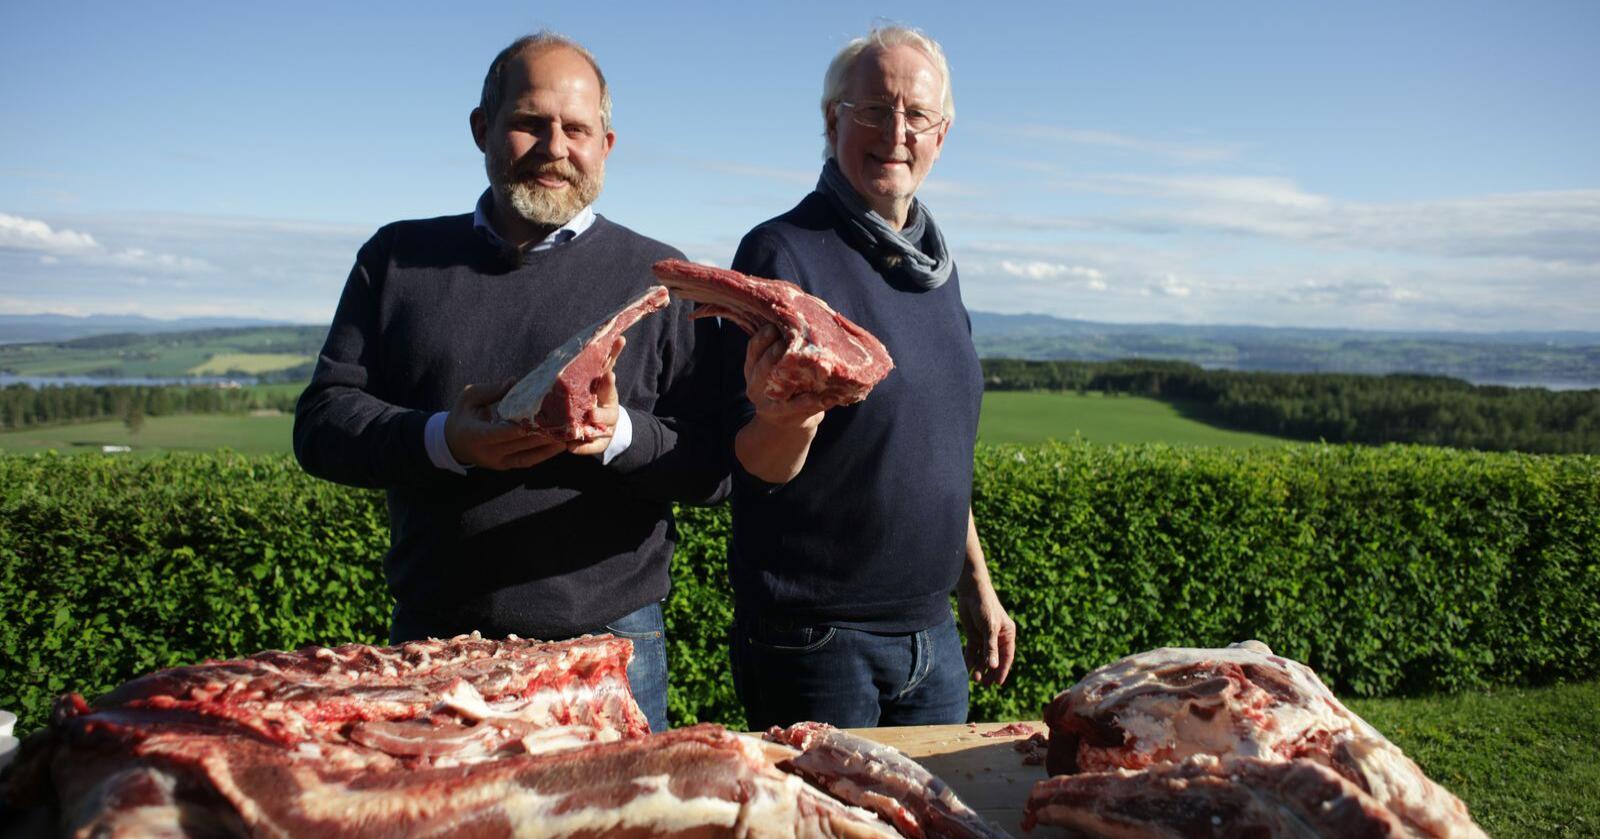 Truls Svendsen og Eyvind Hellstrøm lager mat av blant annet deilig norsk kalvekjøtt fra Hedmarken i den nye sesongen av «Truls à la Hellstrøm» på TV 2. Foto: TV 2